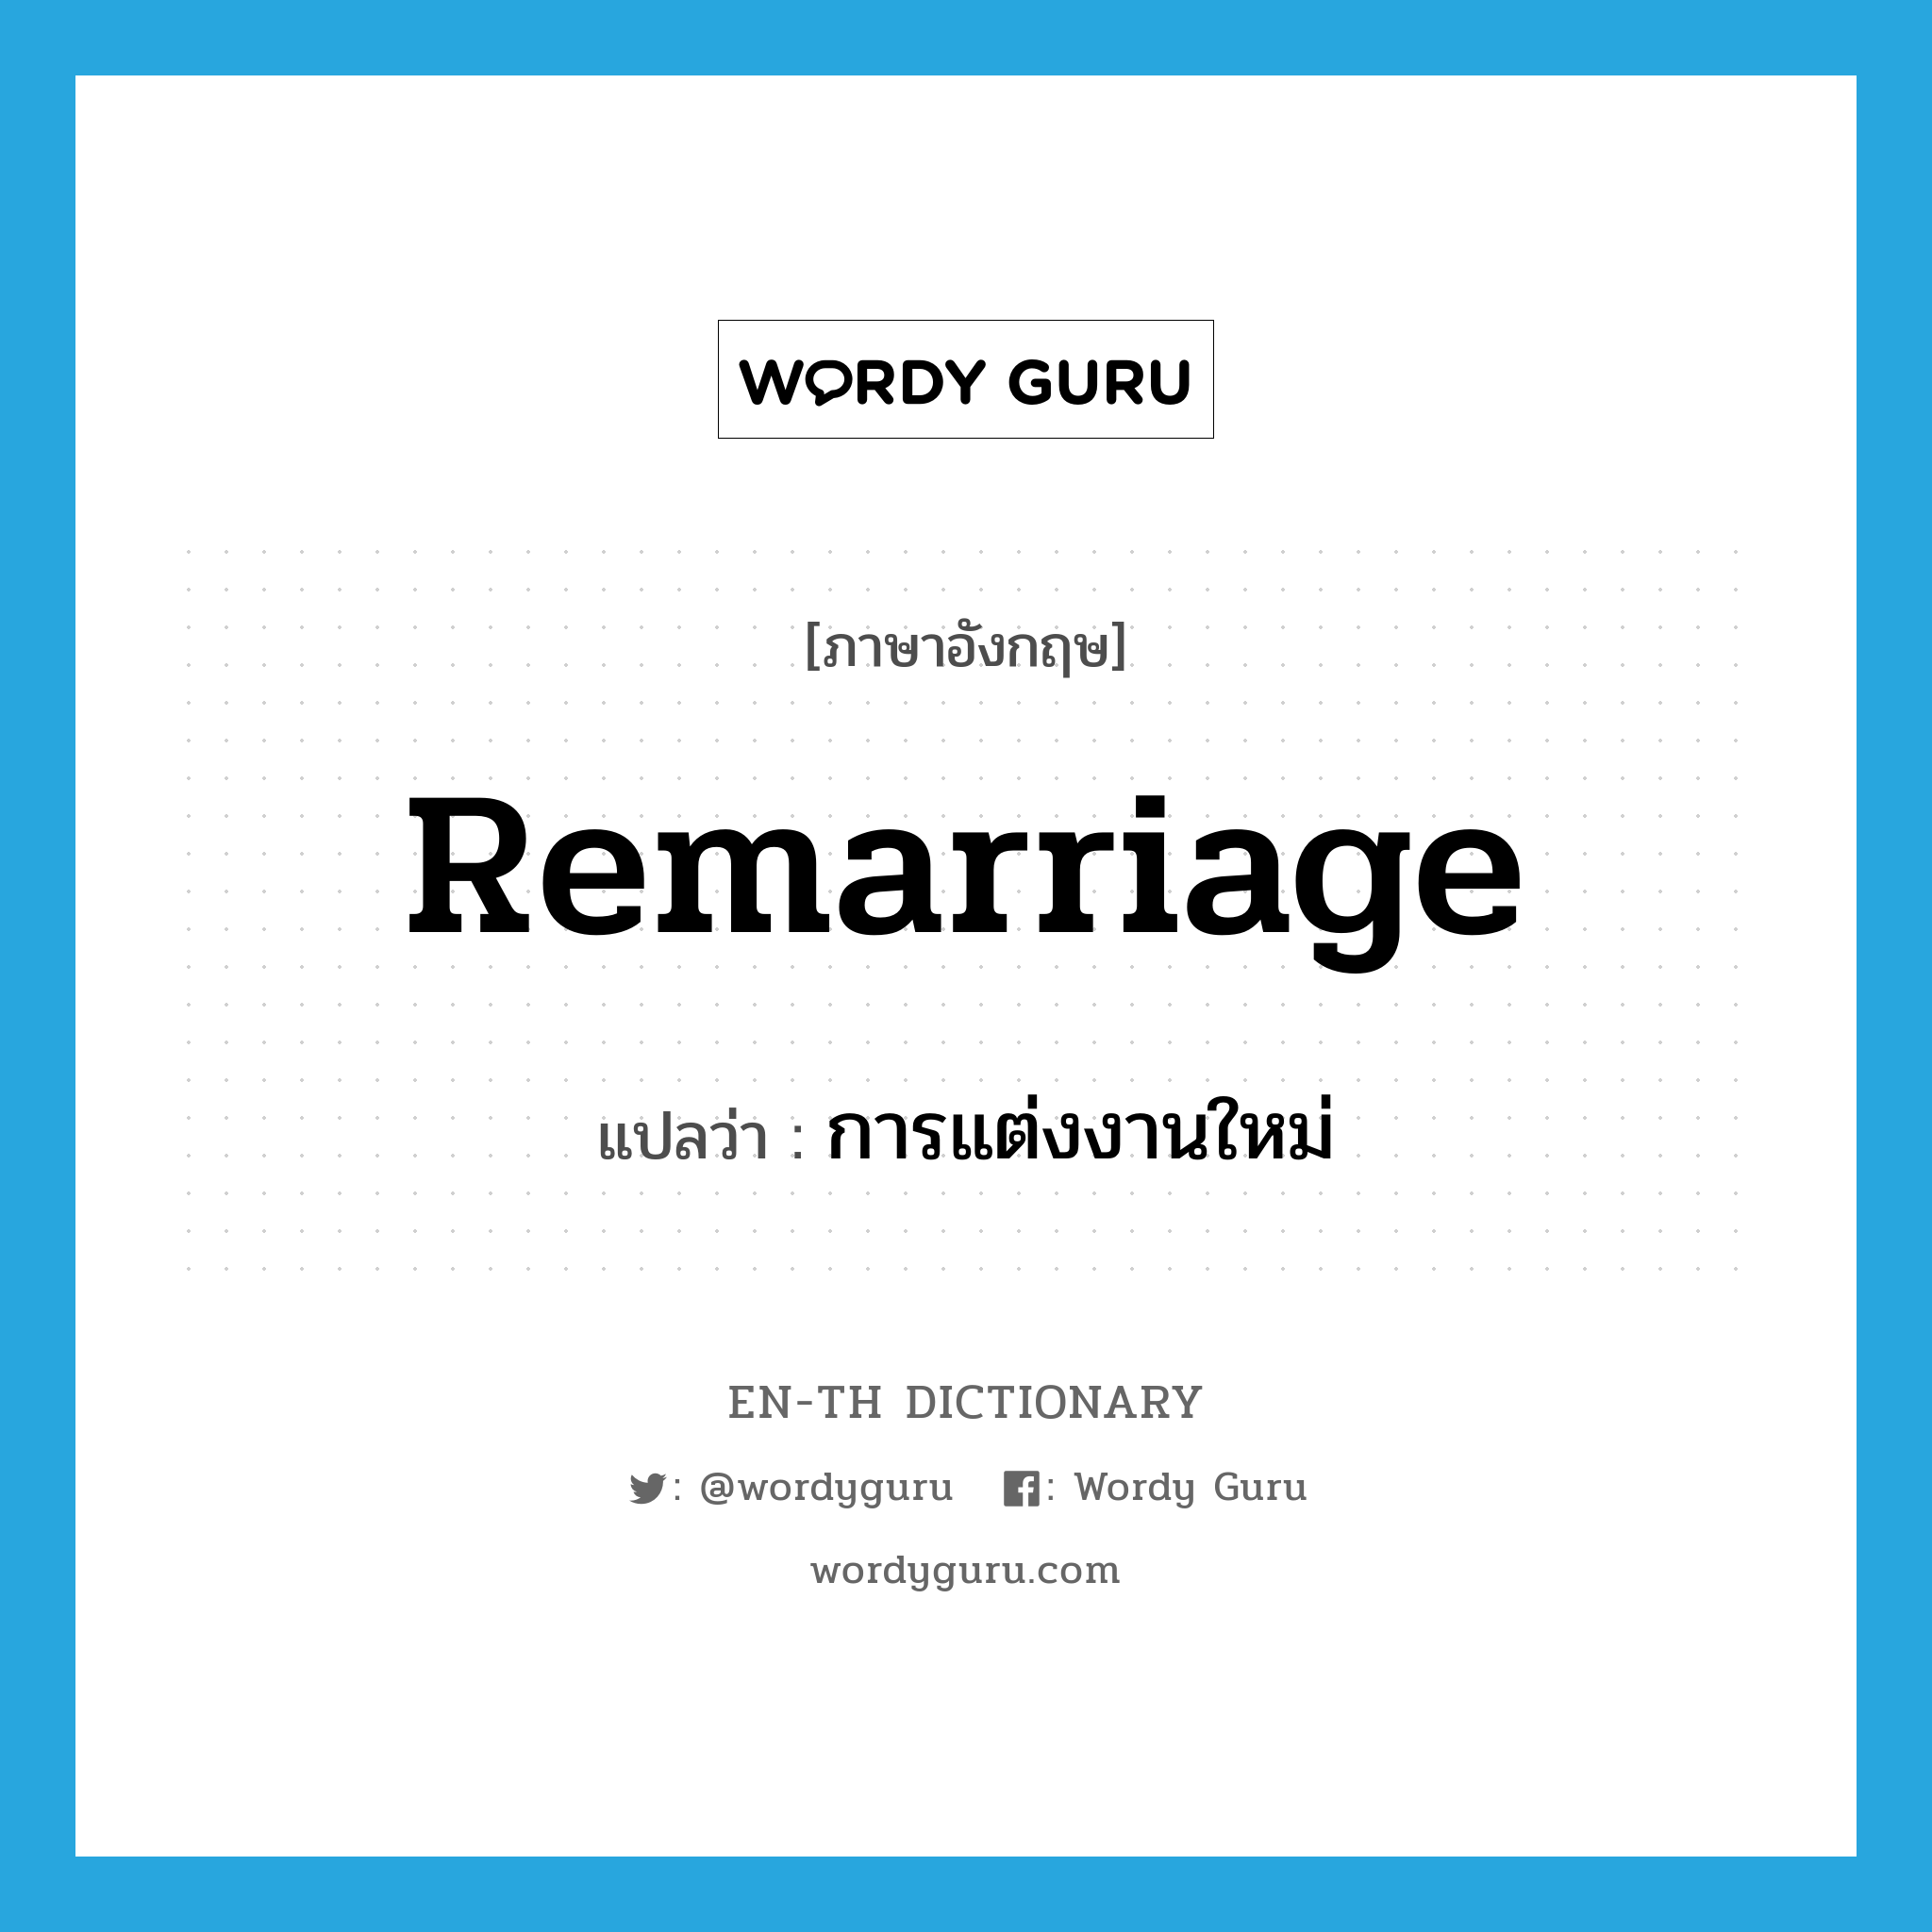 การแต่งงานใหม่ ภาษาอังกฤษ?, คำศัพท์ภาษาอังกฤษ การแต่งงานใหม่ แปลว่า remarriage ประเภท N หมวด N